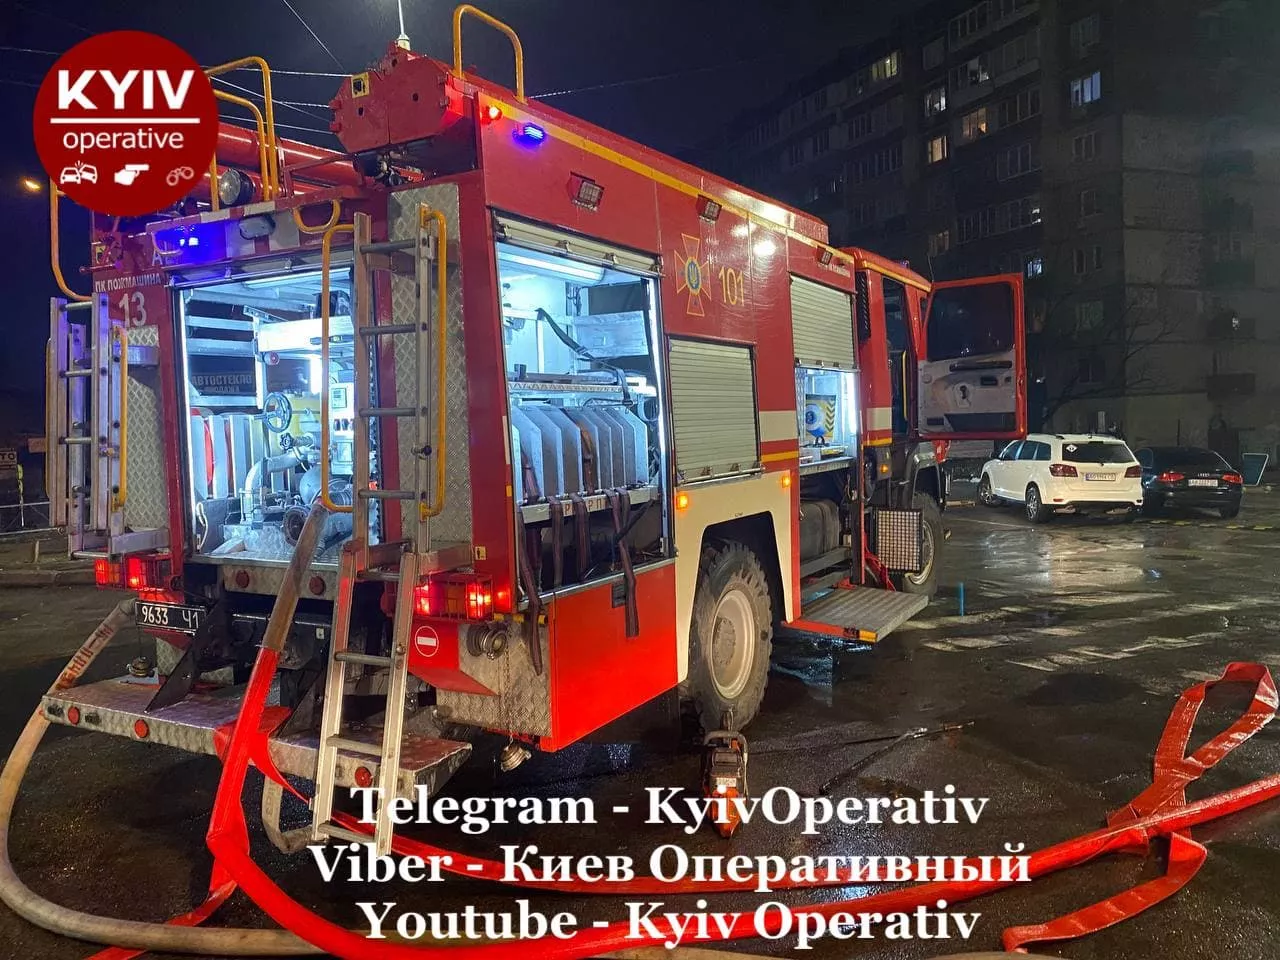 Пожарным удалось потушить огонь/Фото: Telegram-канал Киев оперативный